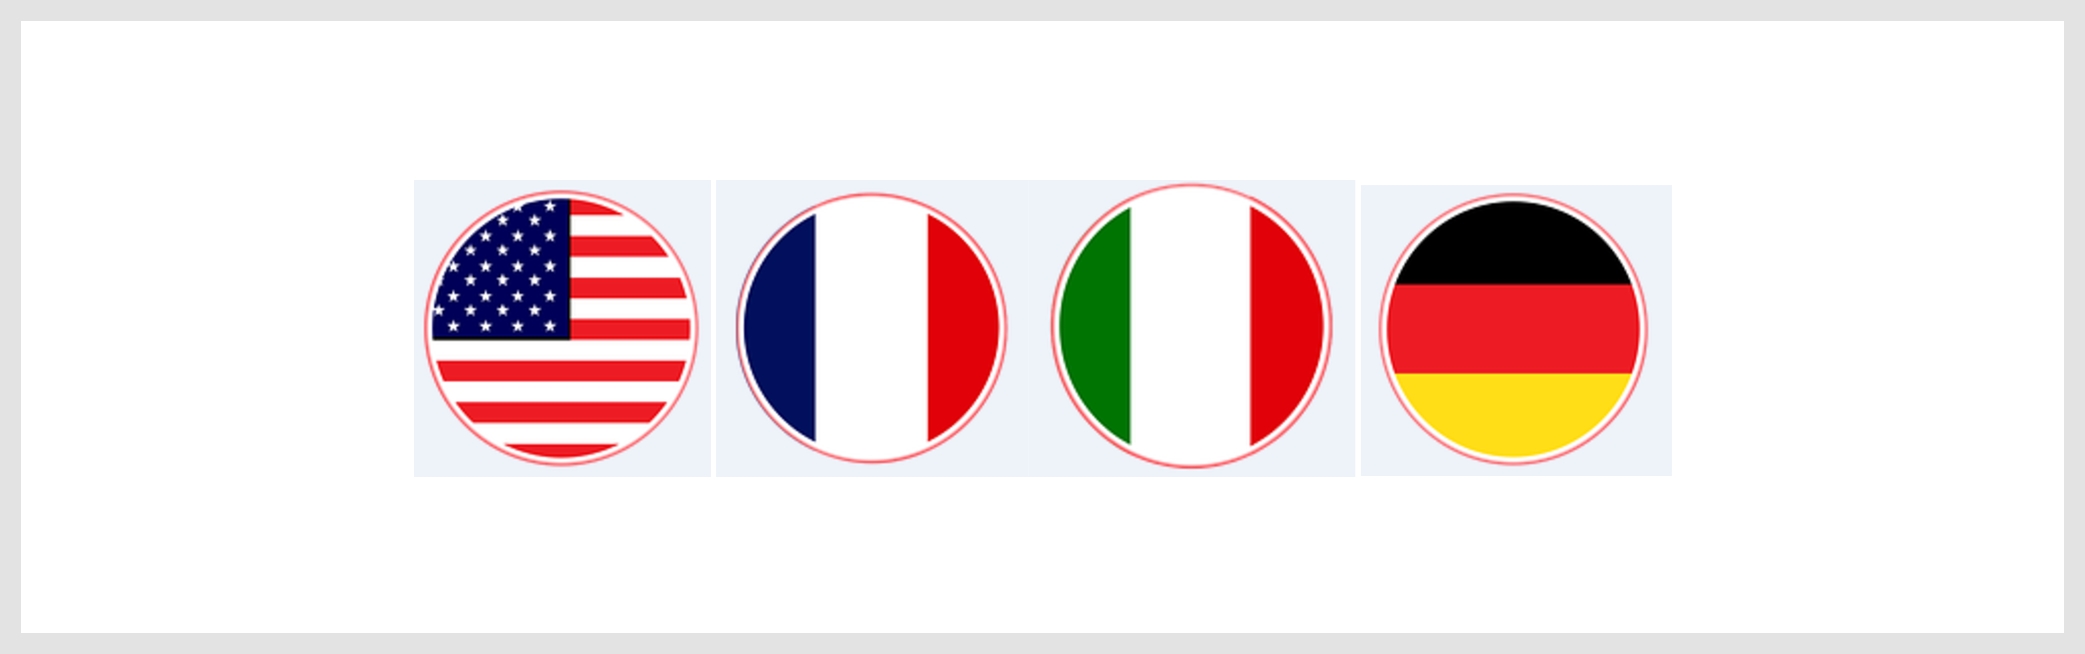 Drapeau pour les langues : Anglais américain, français, italien et allemand